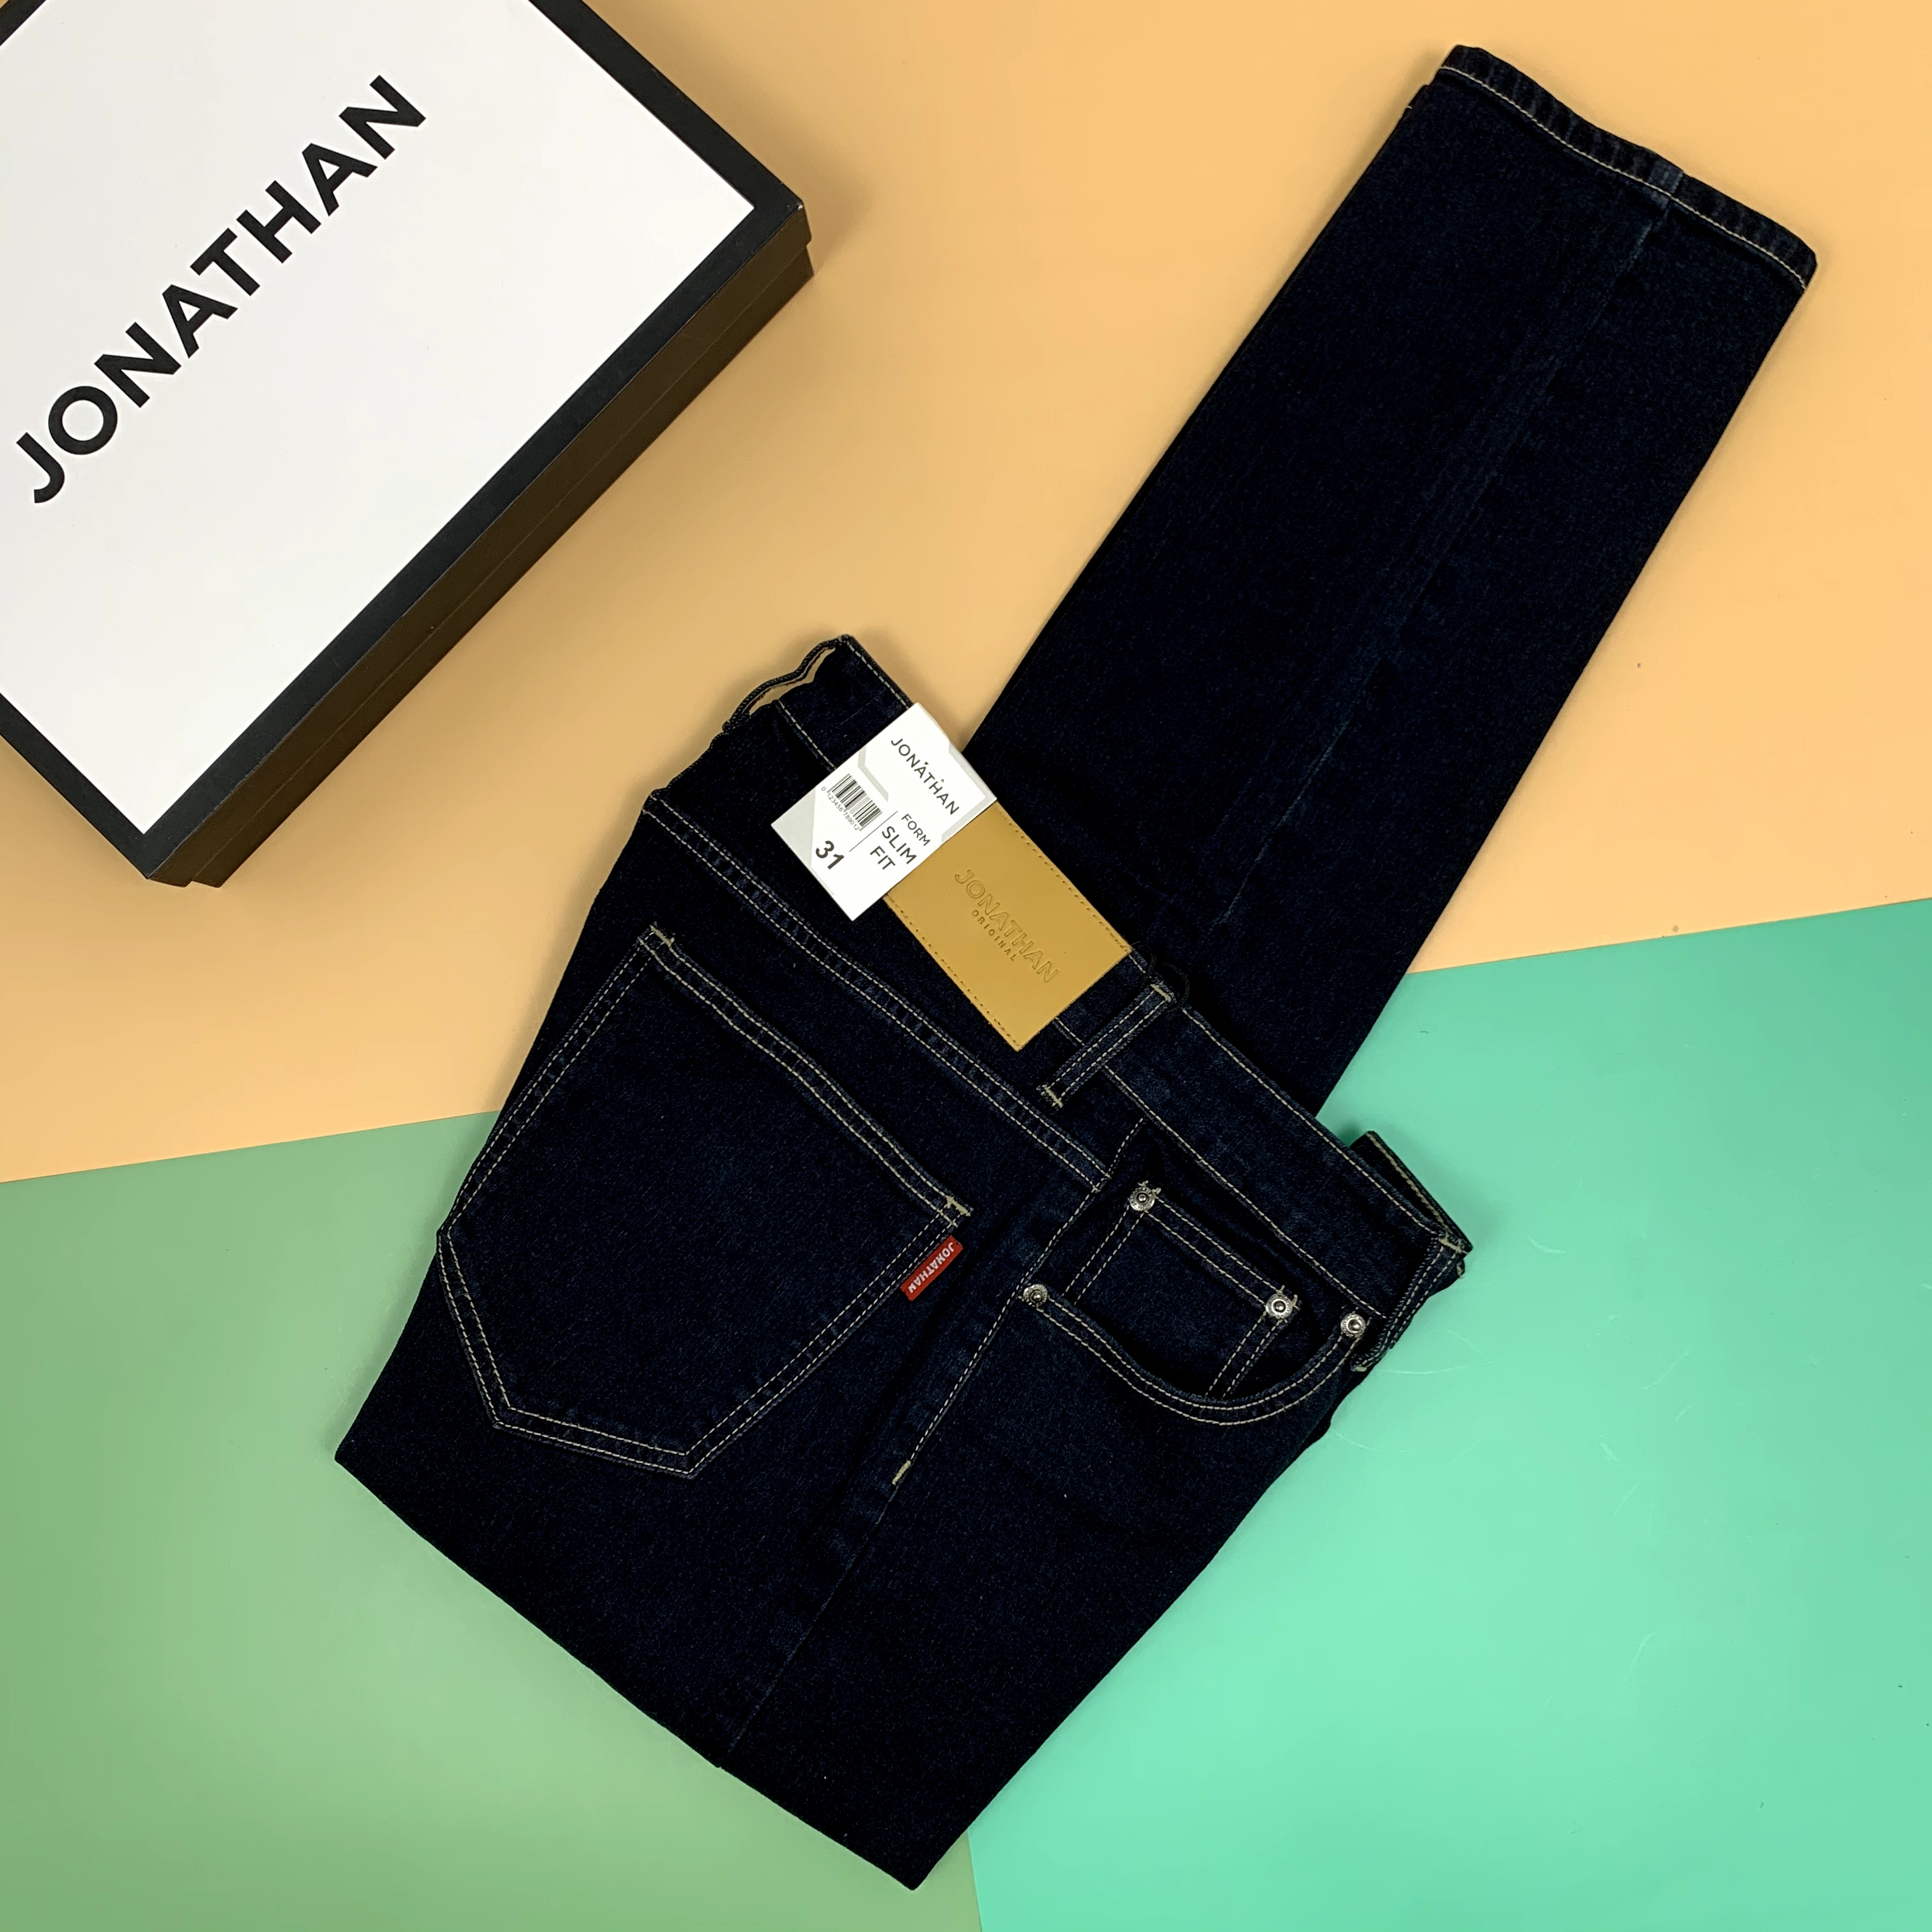 Quần jean nam xanh đen trơn JONATHAN QJ050 vải denim cao cấp co dãn nhẹ 4 chiều, form dáng chuẩn đẹp, hottrend